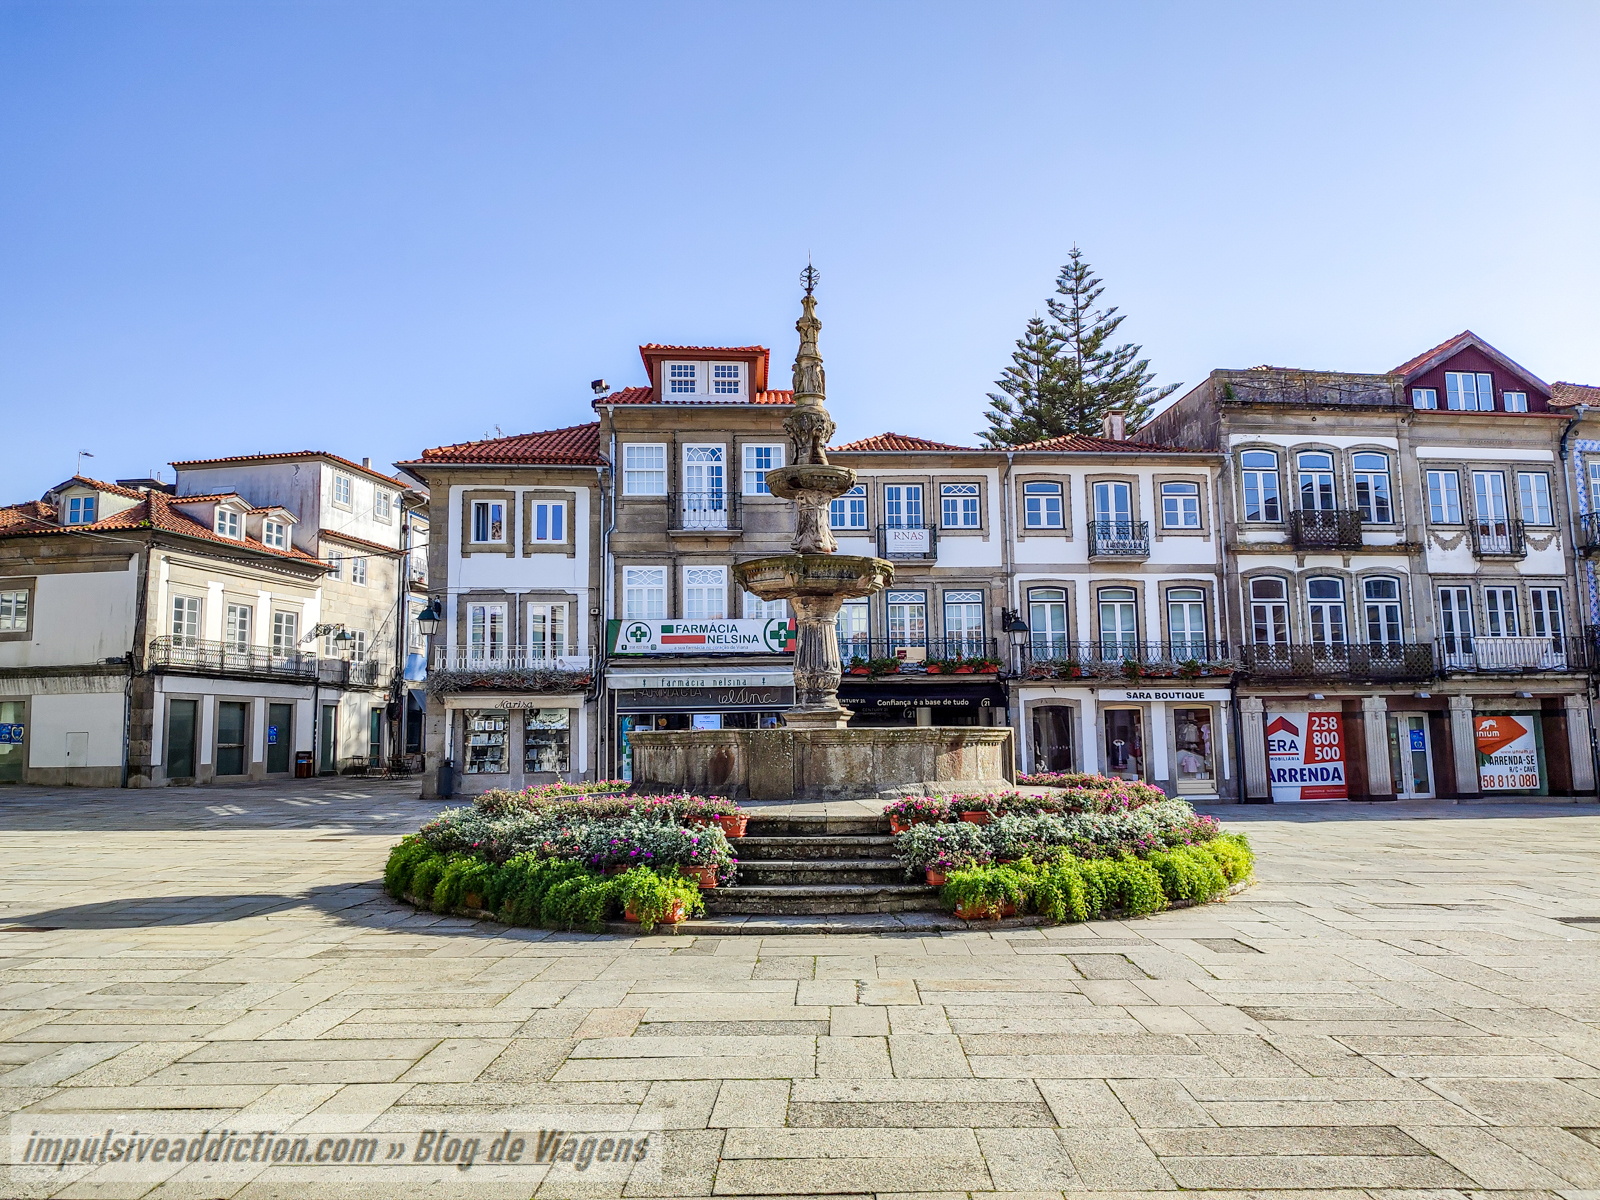 Chafariz da Praça da República de Viana do Castelo